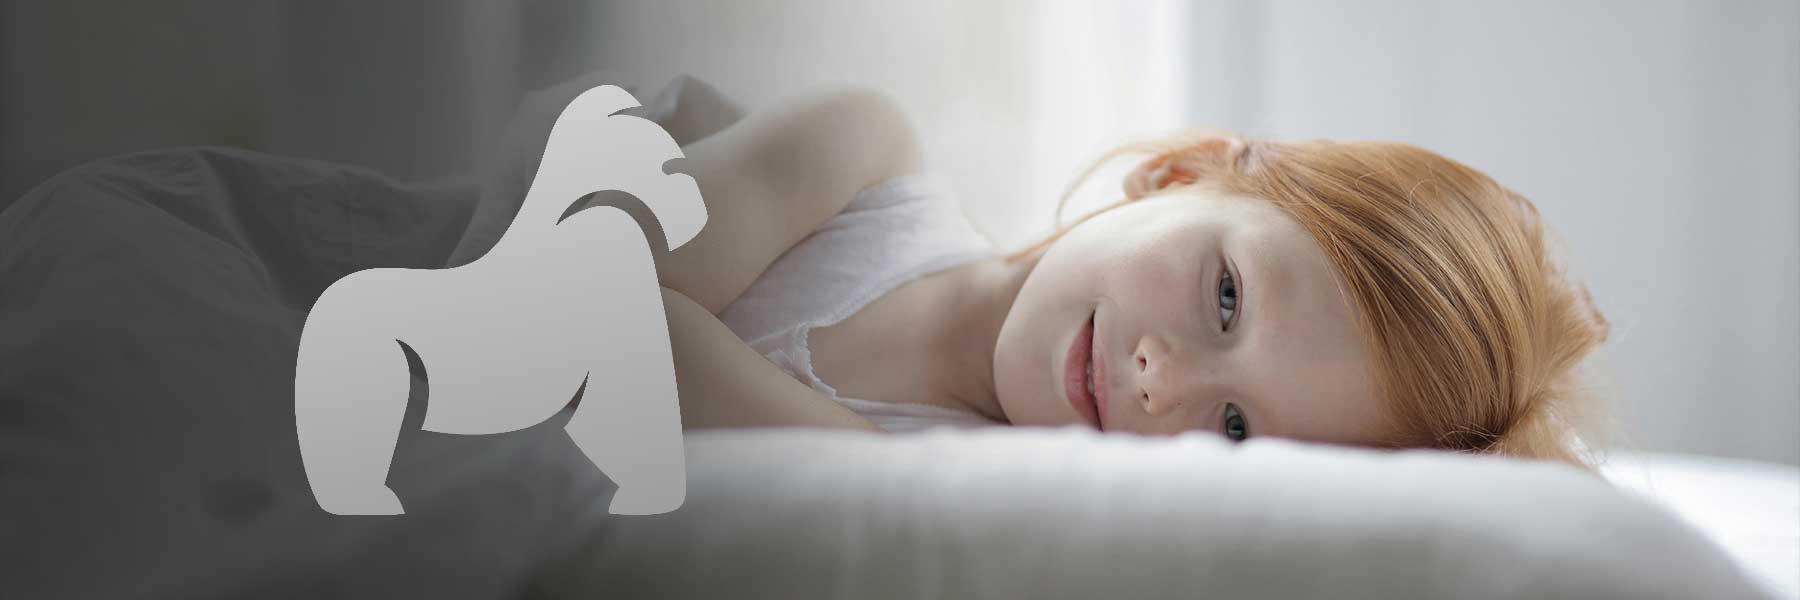 Die "5 Regeln für guten Schlaf" beginnen mit der ersten Regel: "Schätze deinen Schlaf"